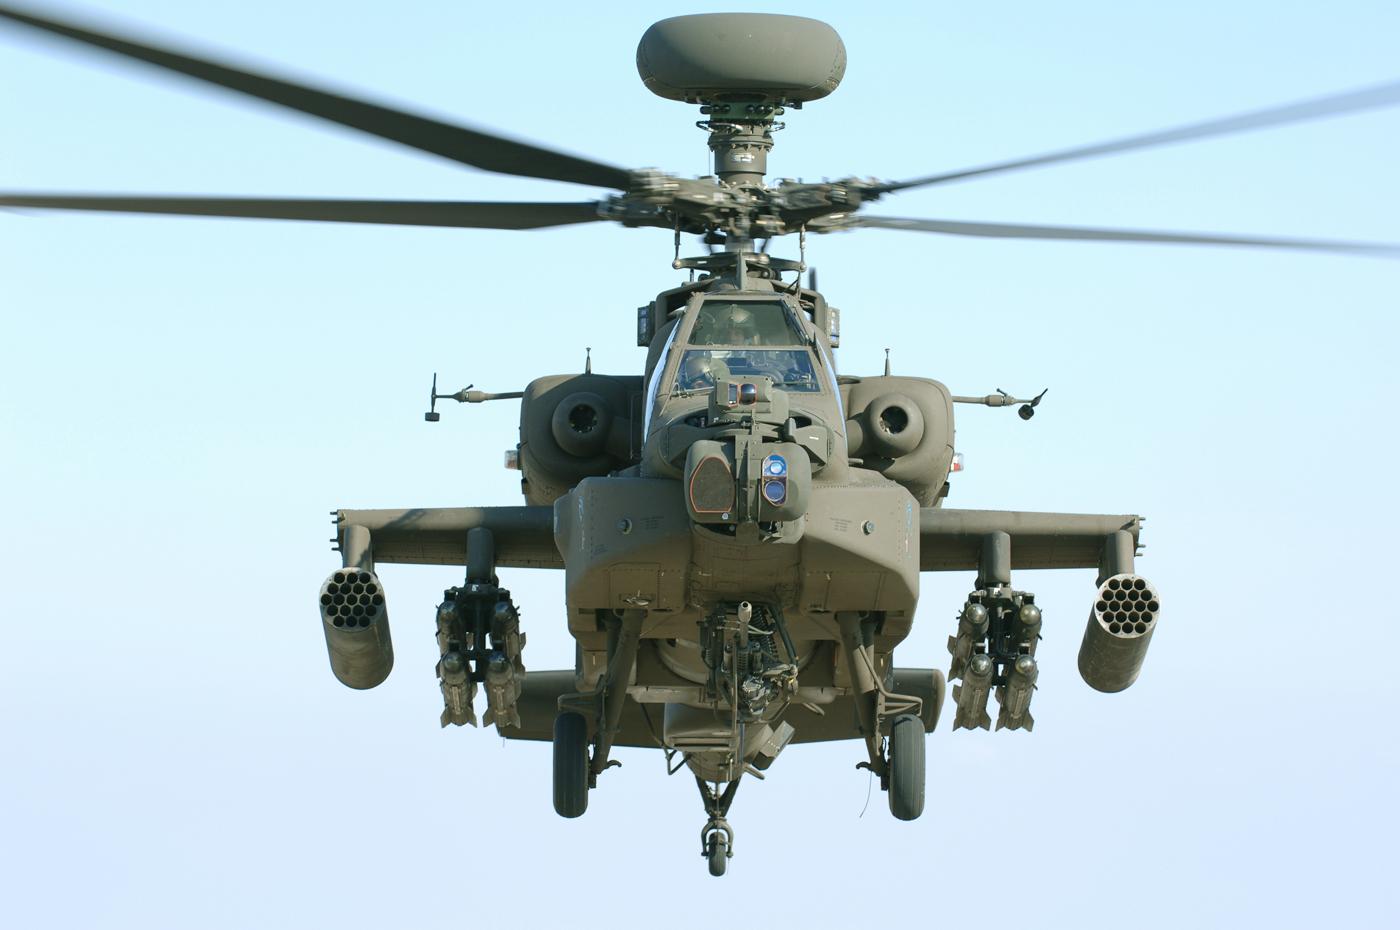 L’optronique de l’hélicoptère US Apache modernisée par Lockheed Martin